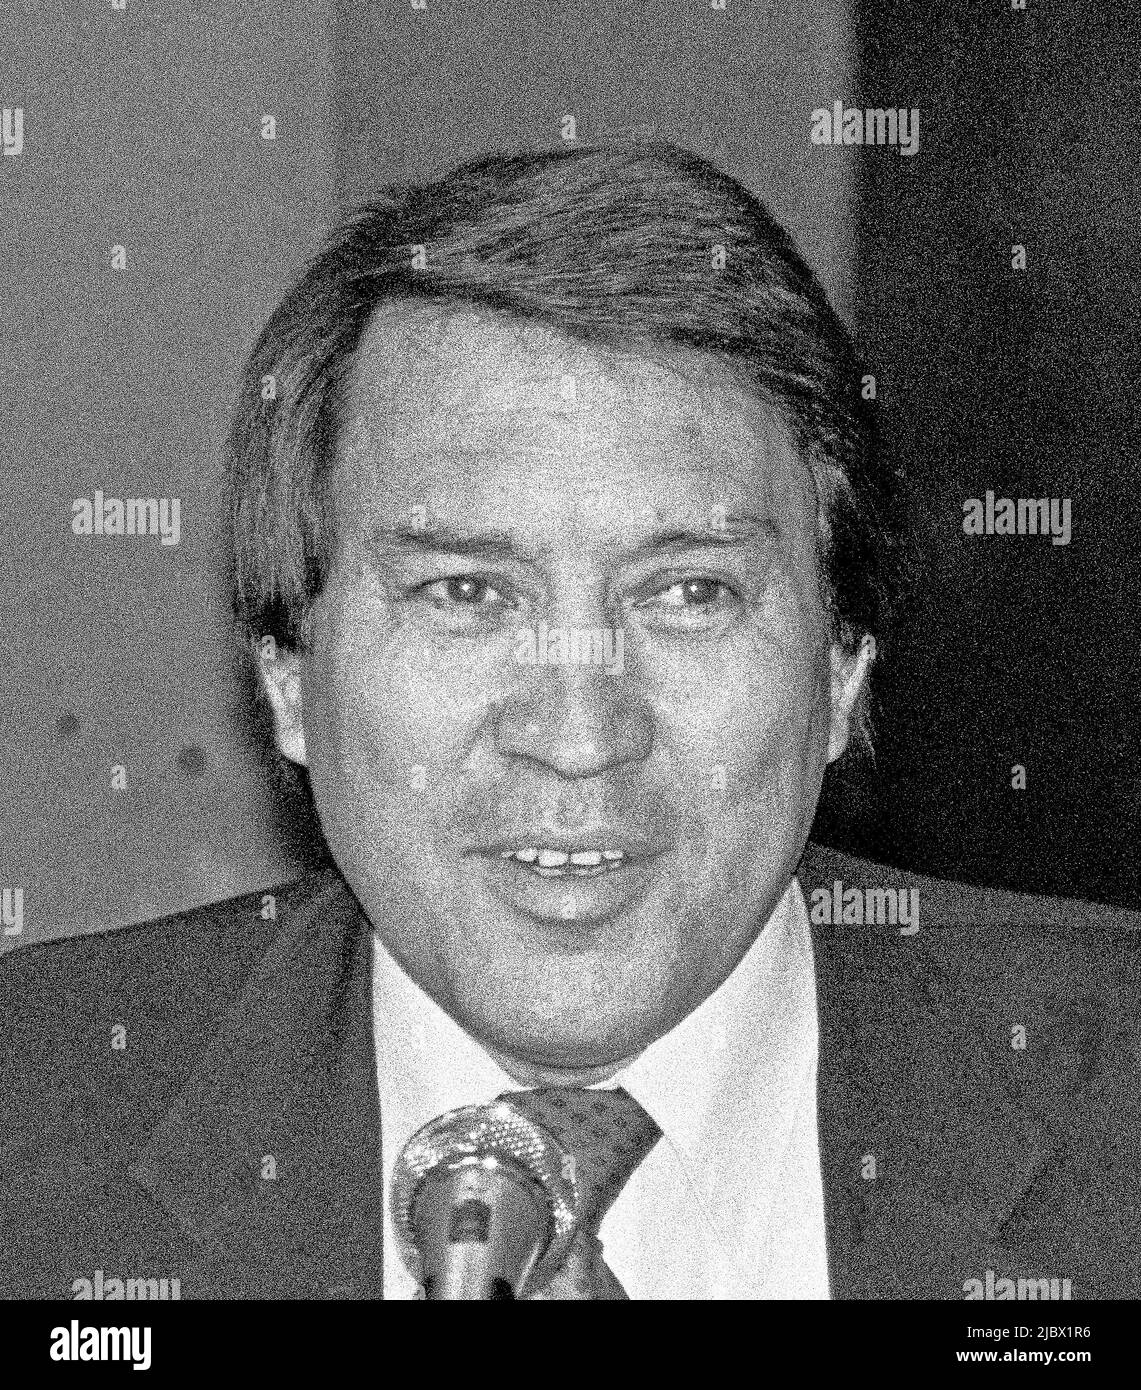 Cesar Ascarrunz lors d'un débat de candidats Mayoral à San Francisco, 1987 Banque D'Images